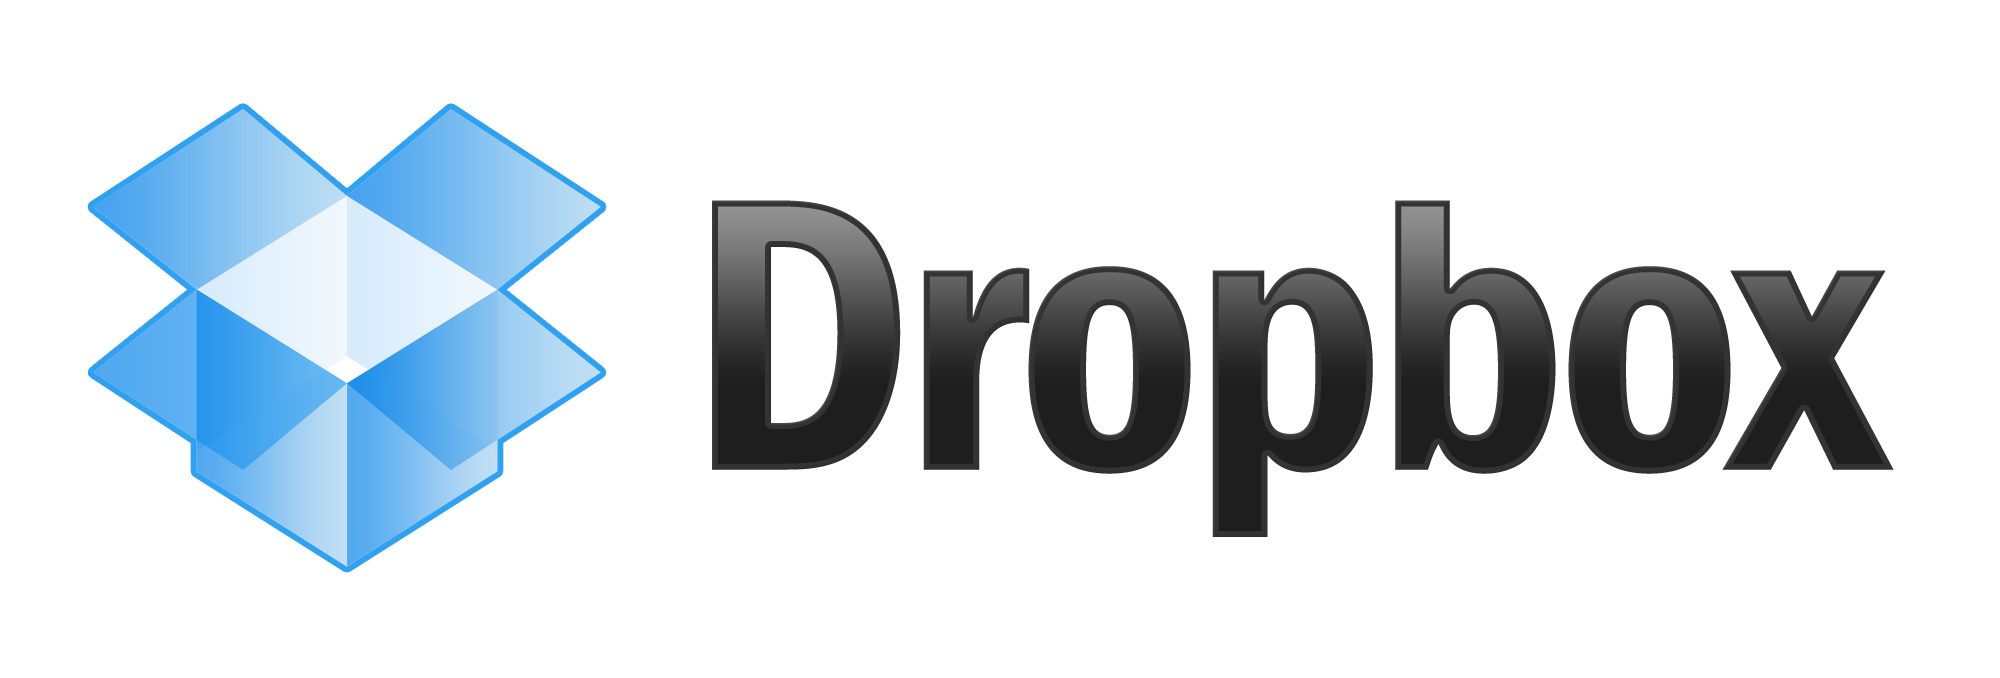 Dropbox App - Condividi online i tuoi file da iPhone, iPad e Android